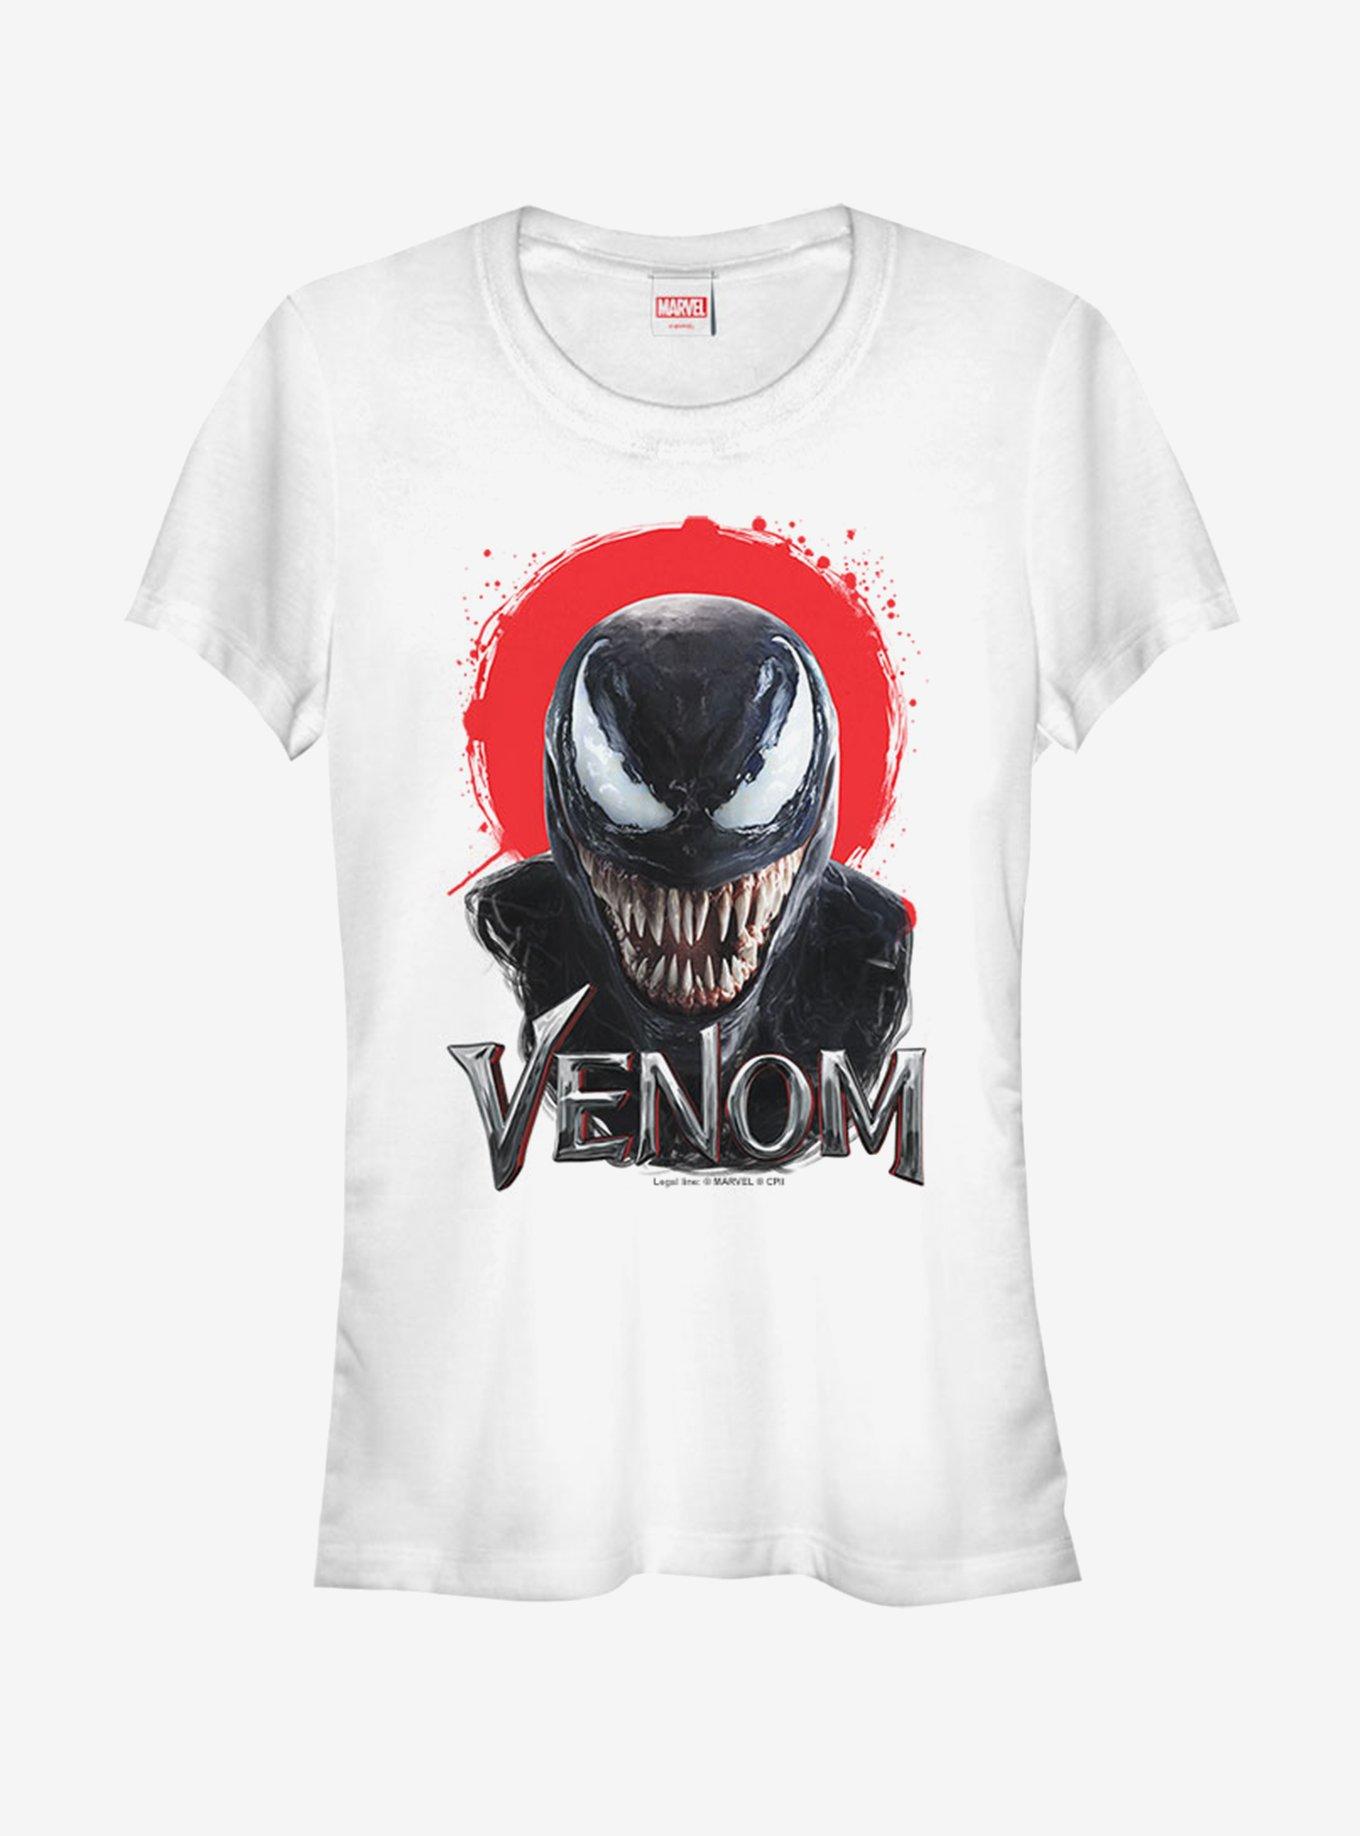 Marvel Venom Red Girls T-Shirt, WHITE, hi-res